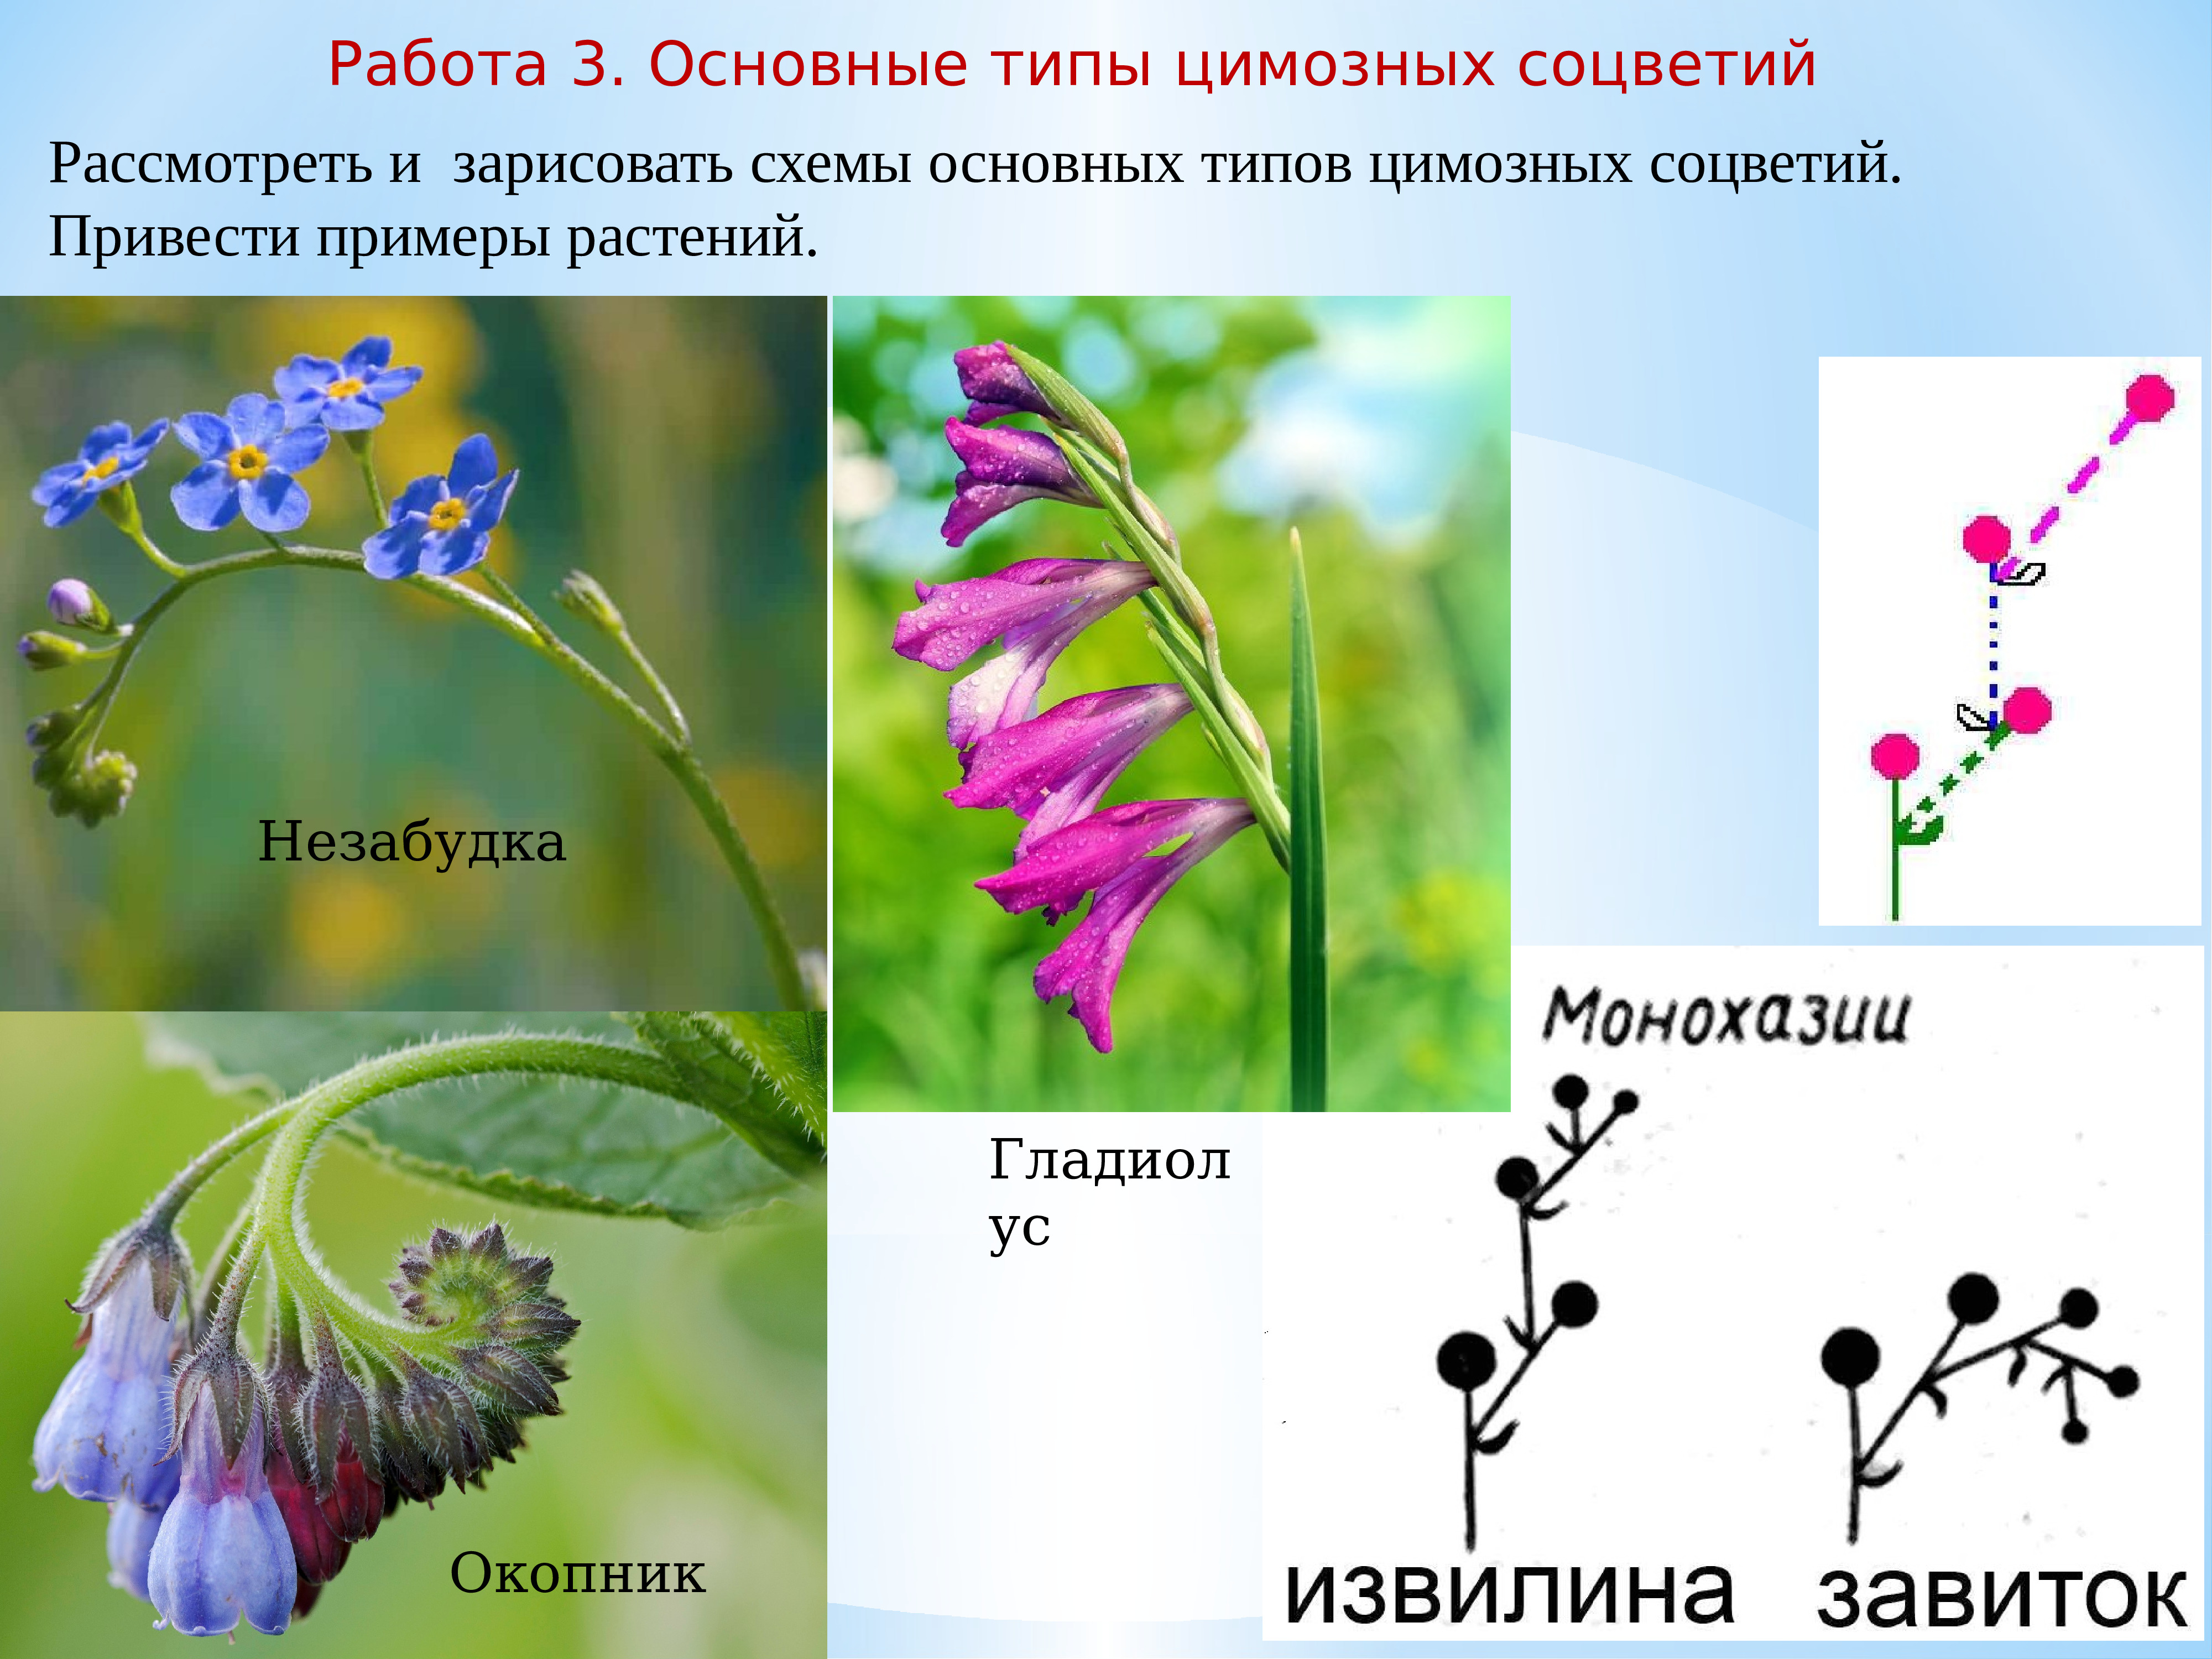 Примеры про растения. Монохазий соцветие. Цимозные соцветия. Монохазий соцветие извилина. Монохазий завиток соцветие.